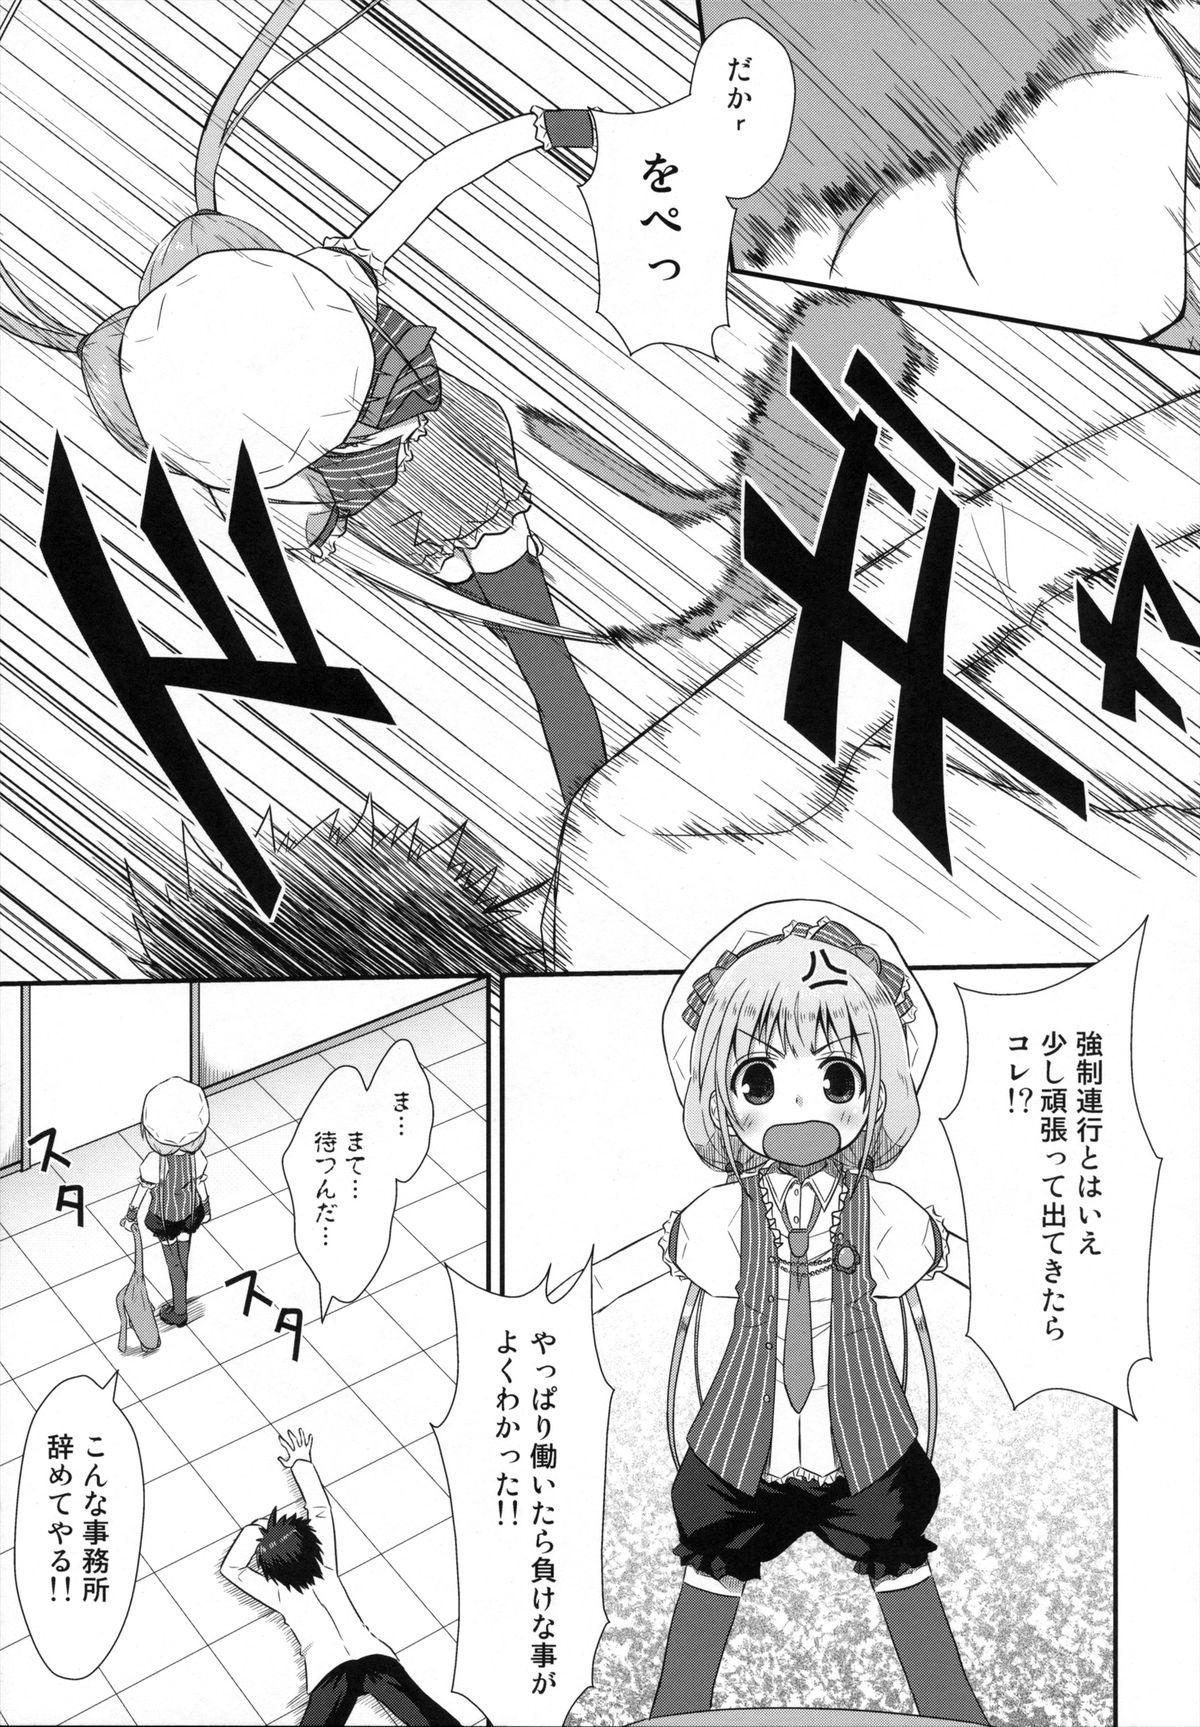 Pervs Shitte Iruka? Neet no Ashikoshi no Yowasa wo Kesshite Namete wa Ikenai - The idolmaster Whipping - Page 6